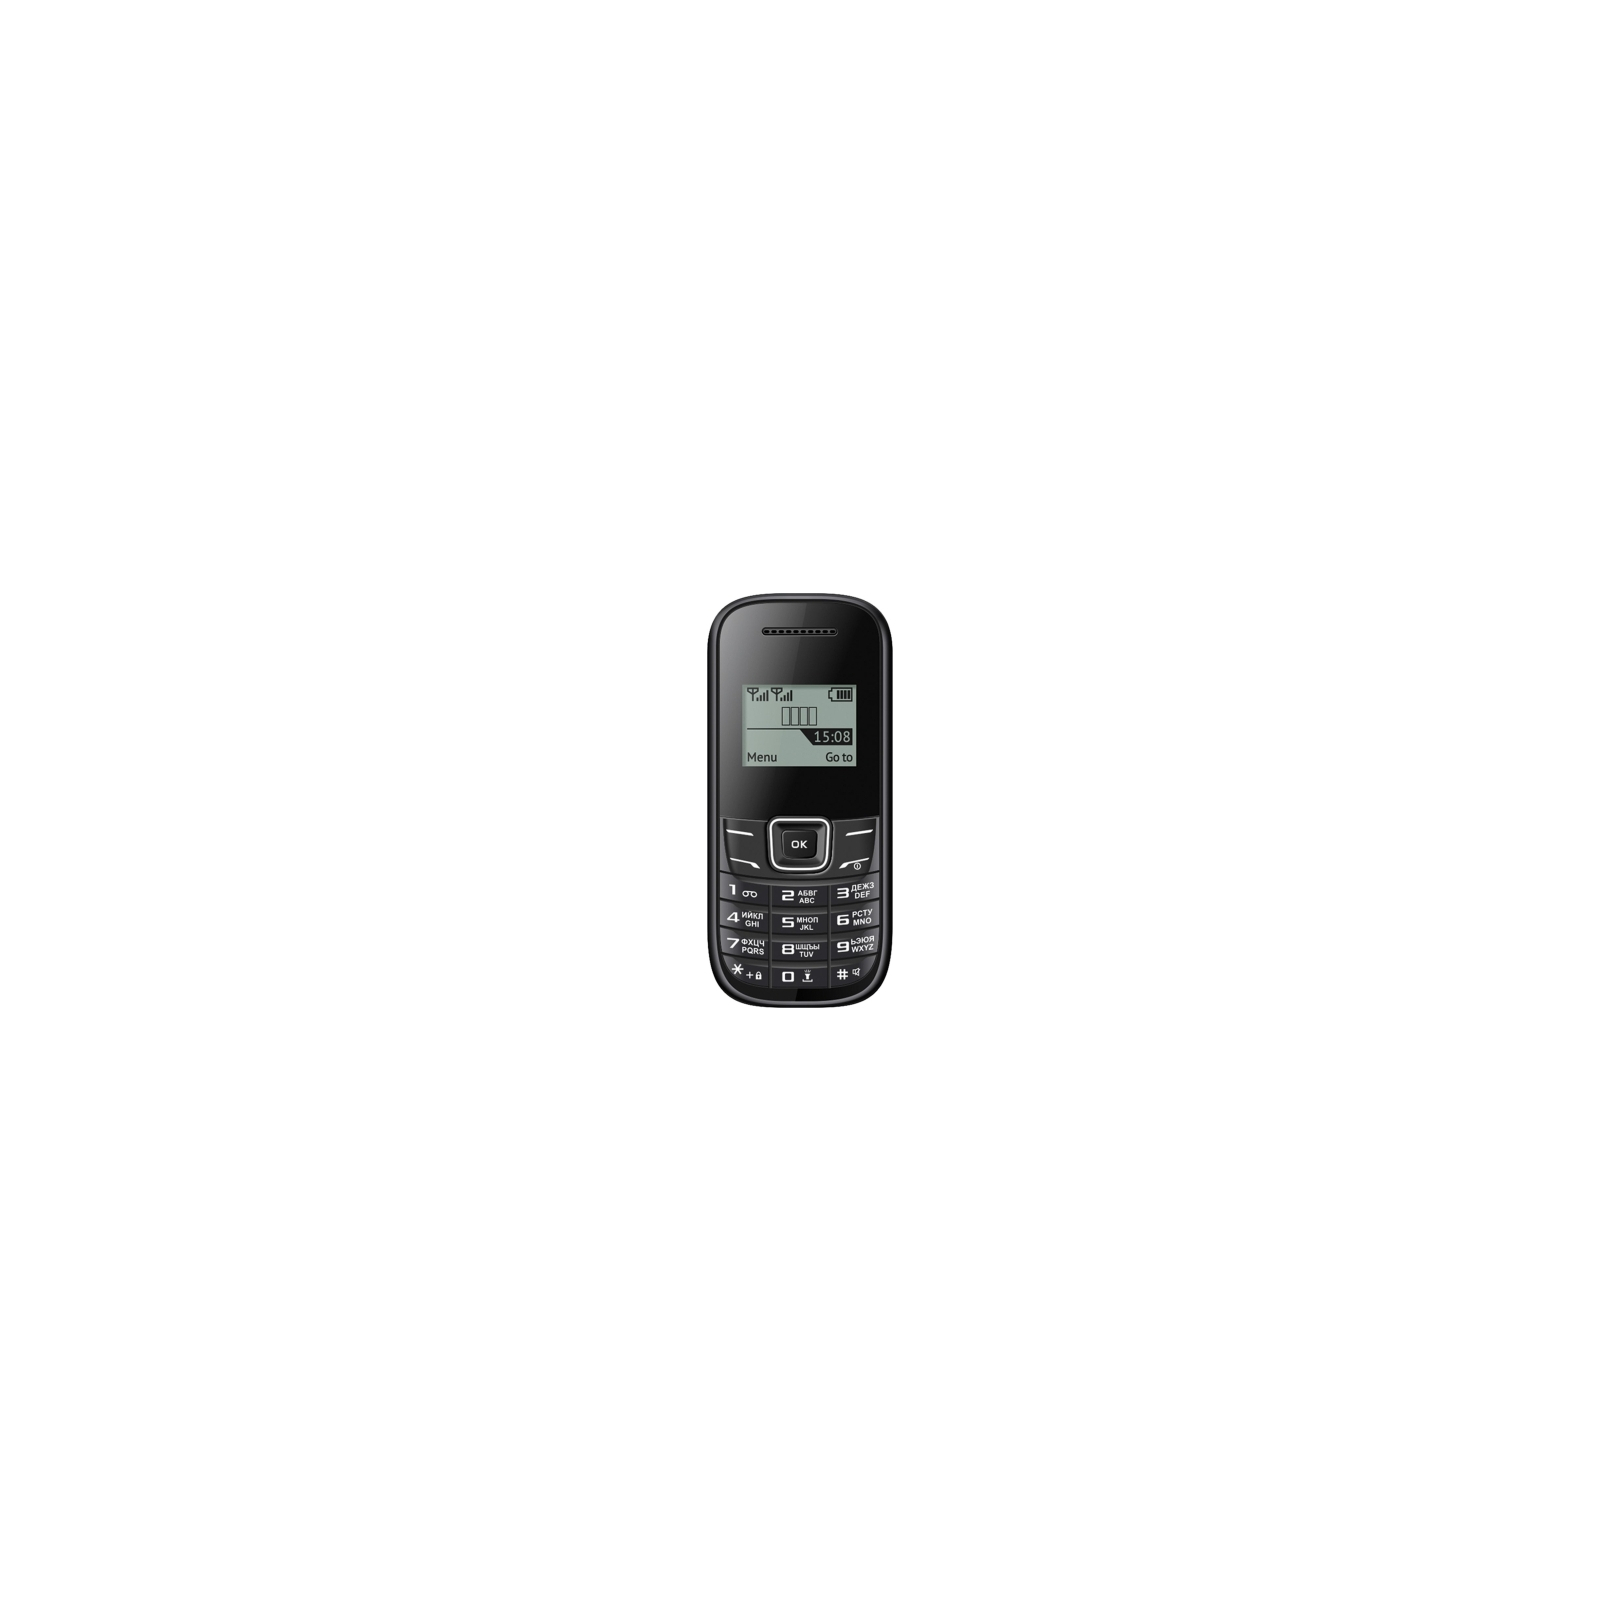 Мобильный телефон Nomi i144m Black изображение 2